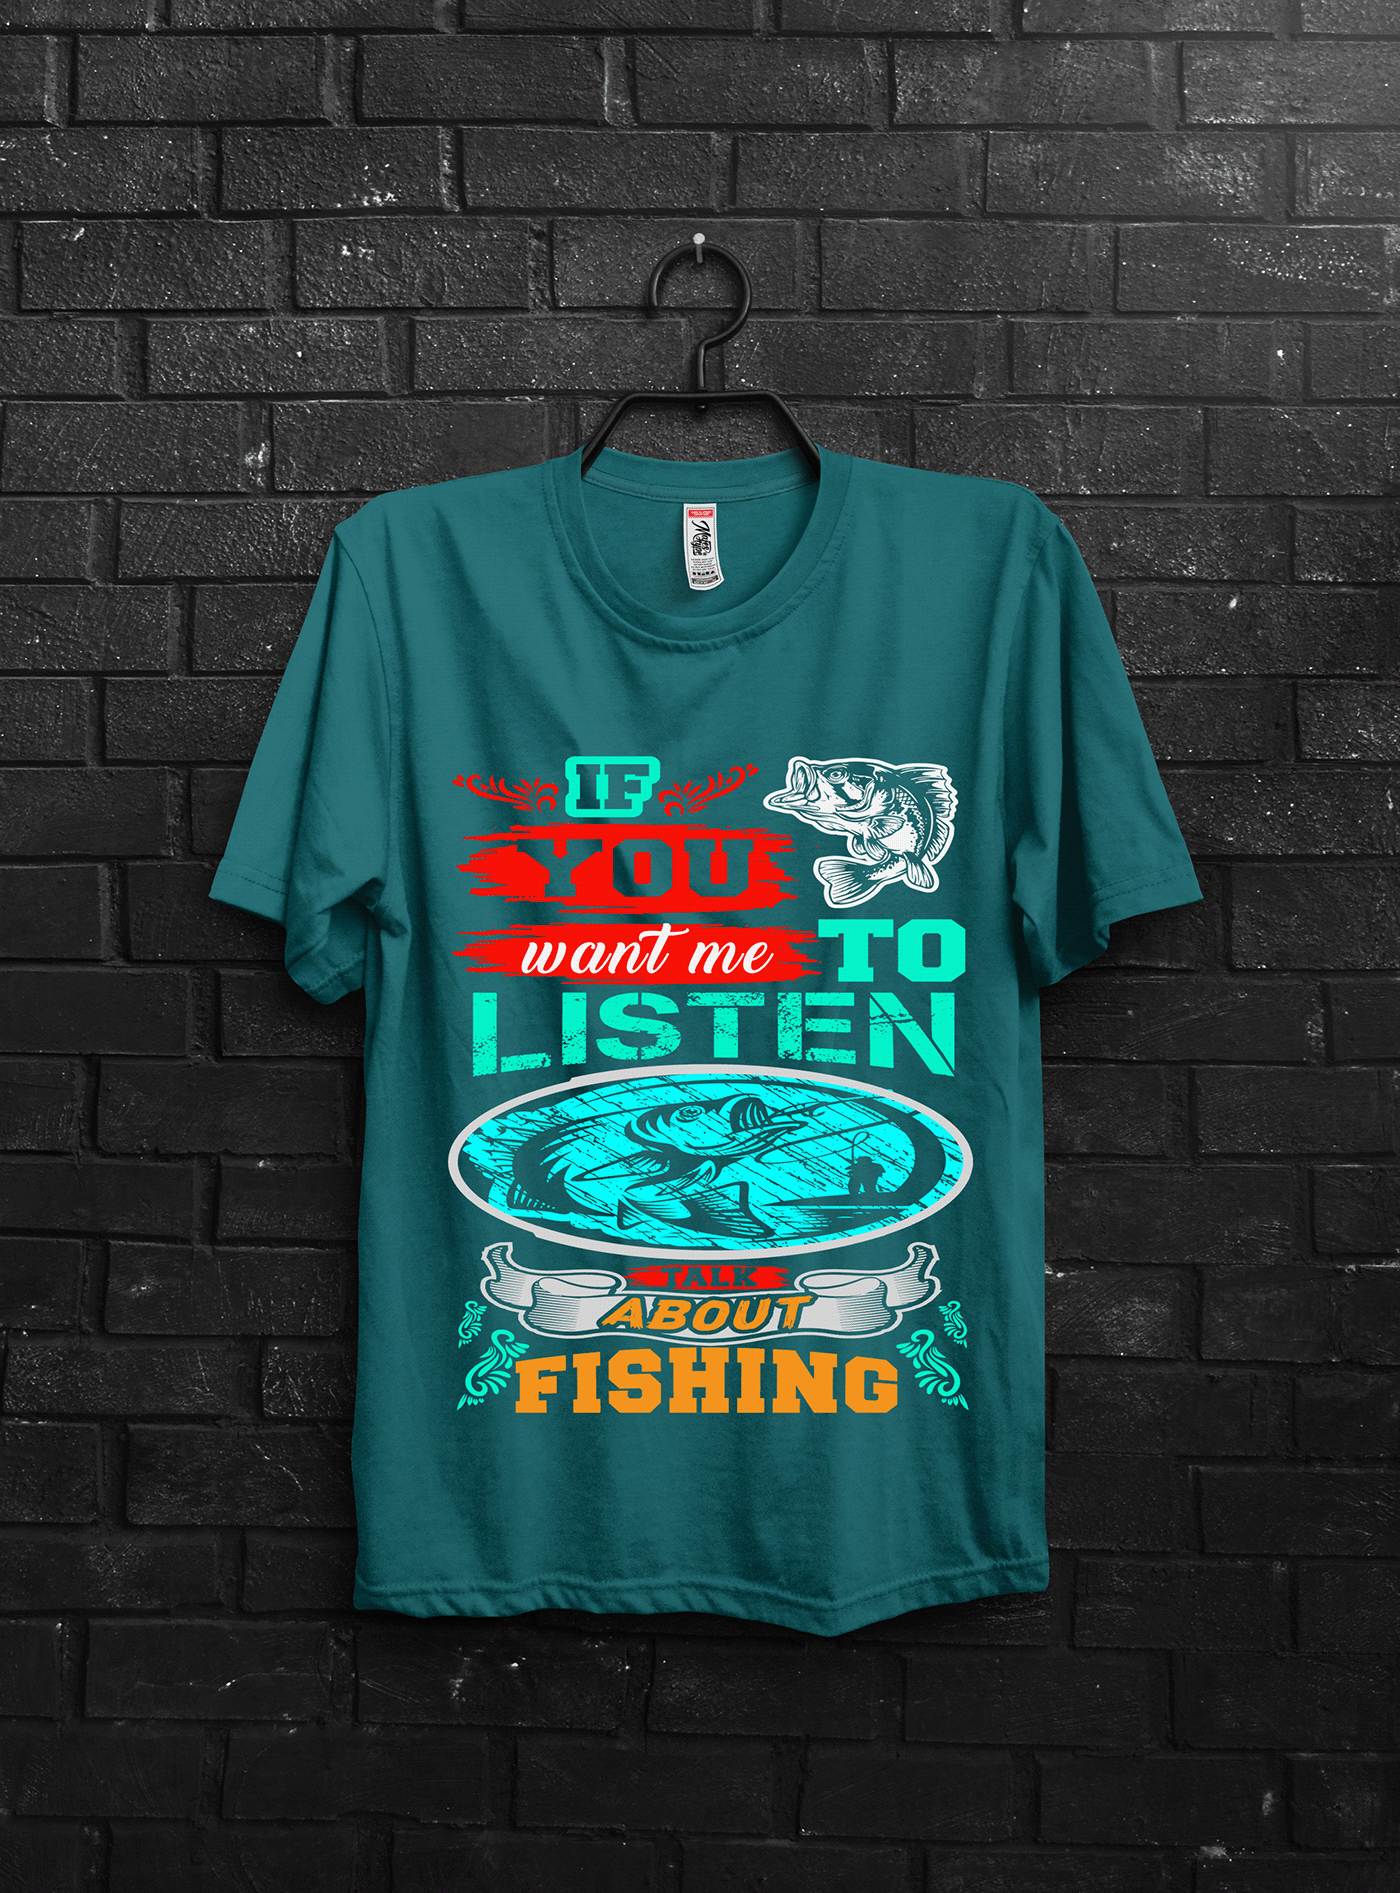 #Fishing t-shirt #fishing t-shirt design #t-shirt   fishing t-shirts amazon best fishing t shirt bulk t-shirt design custom t-shirt design Typography t-shirt design Dog t-shirt Design